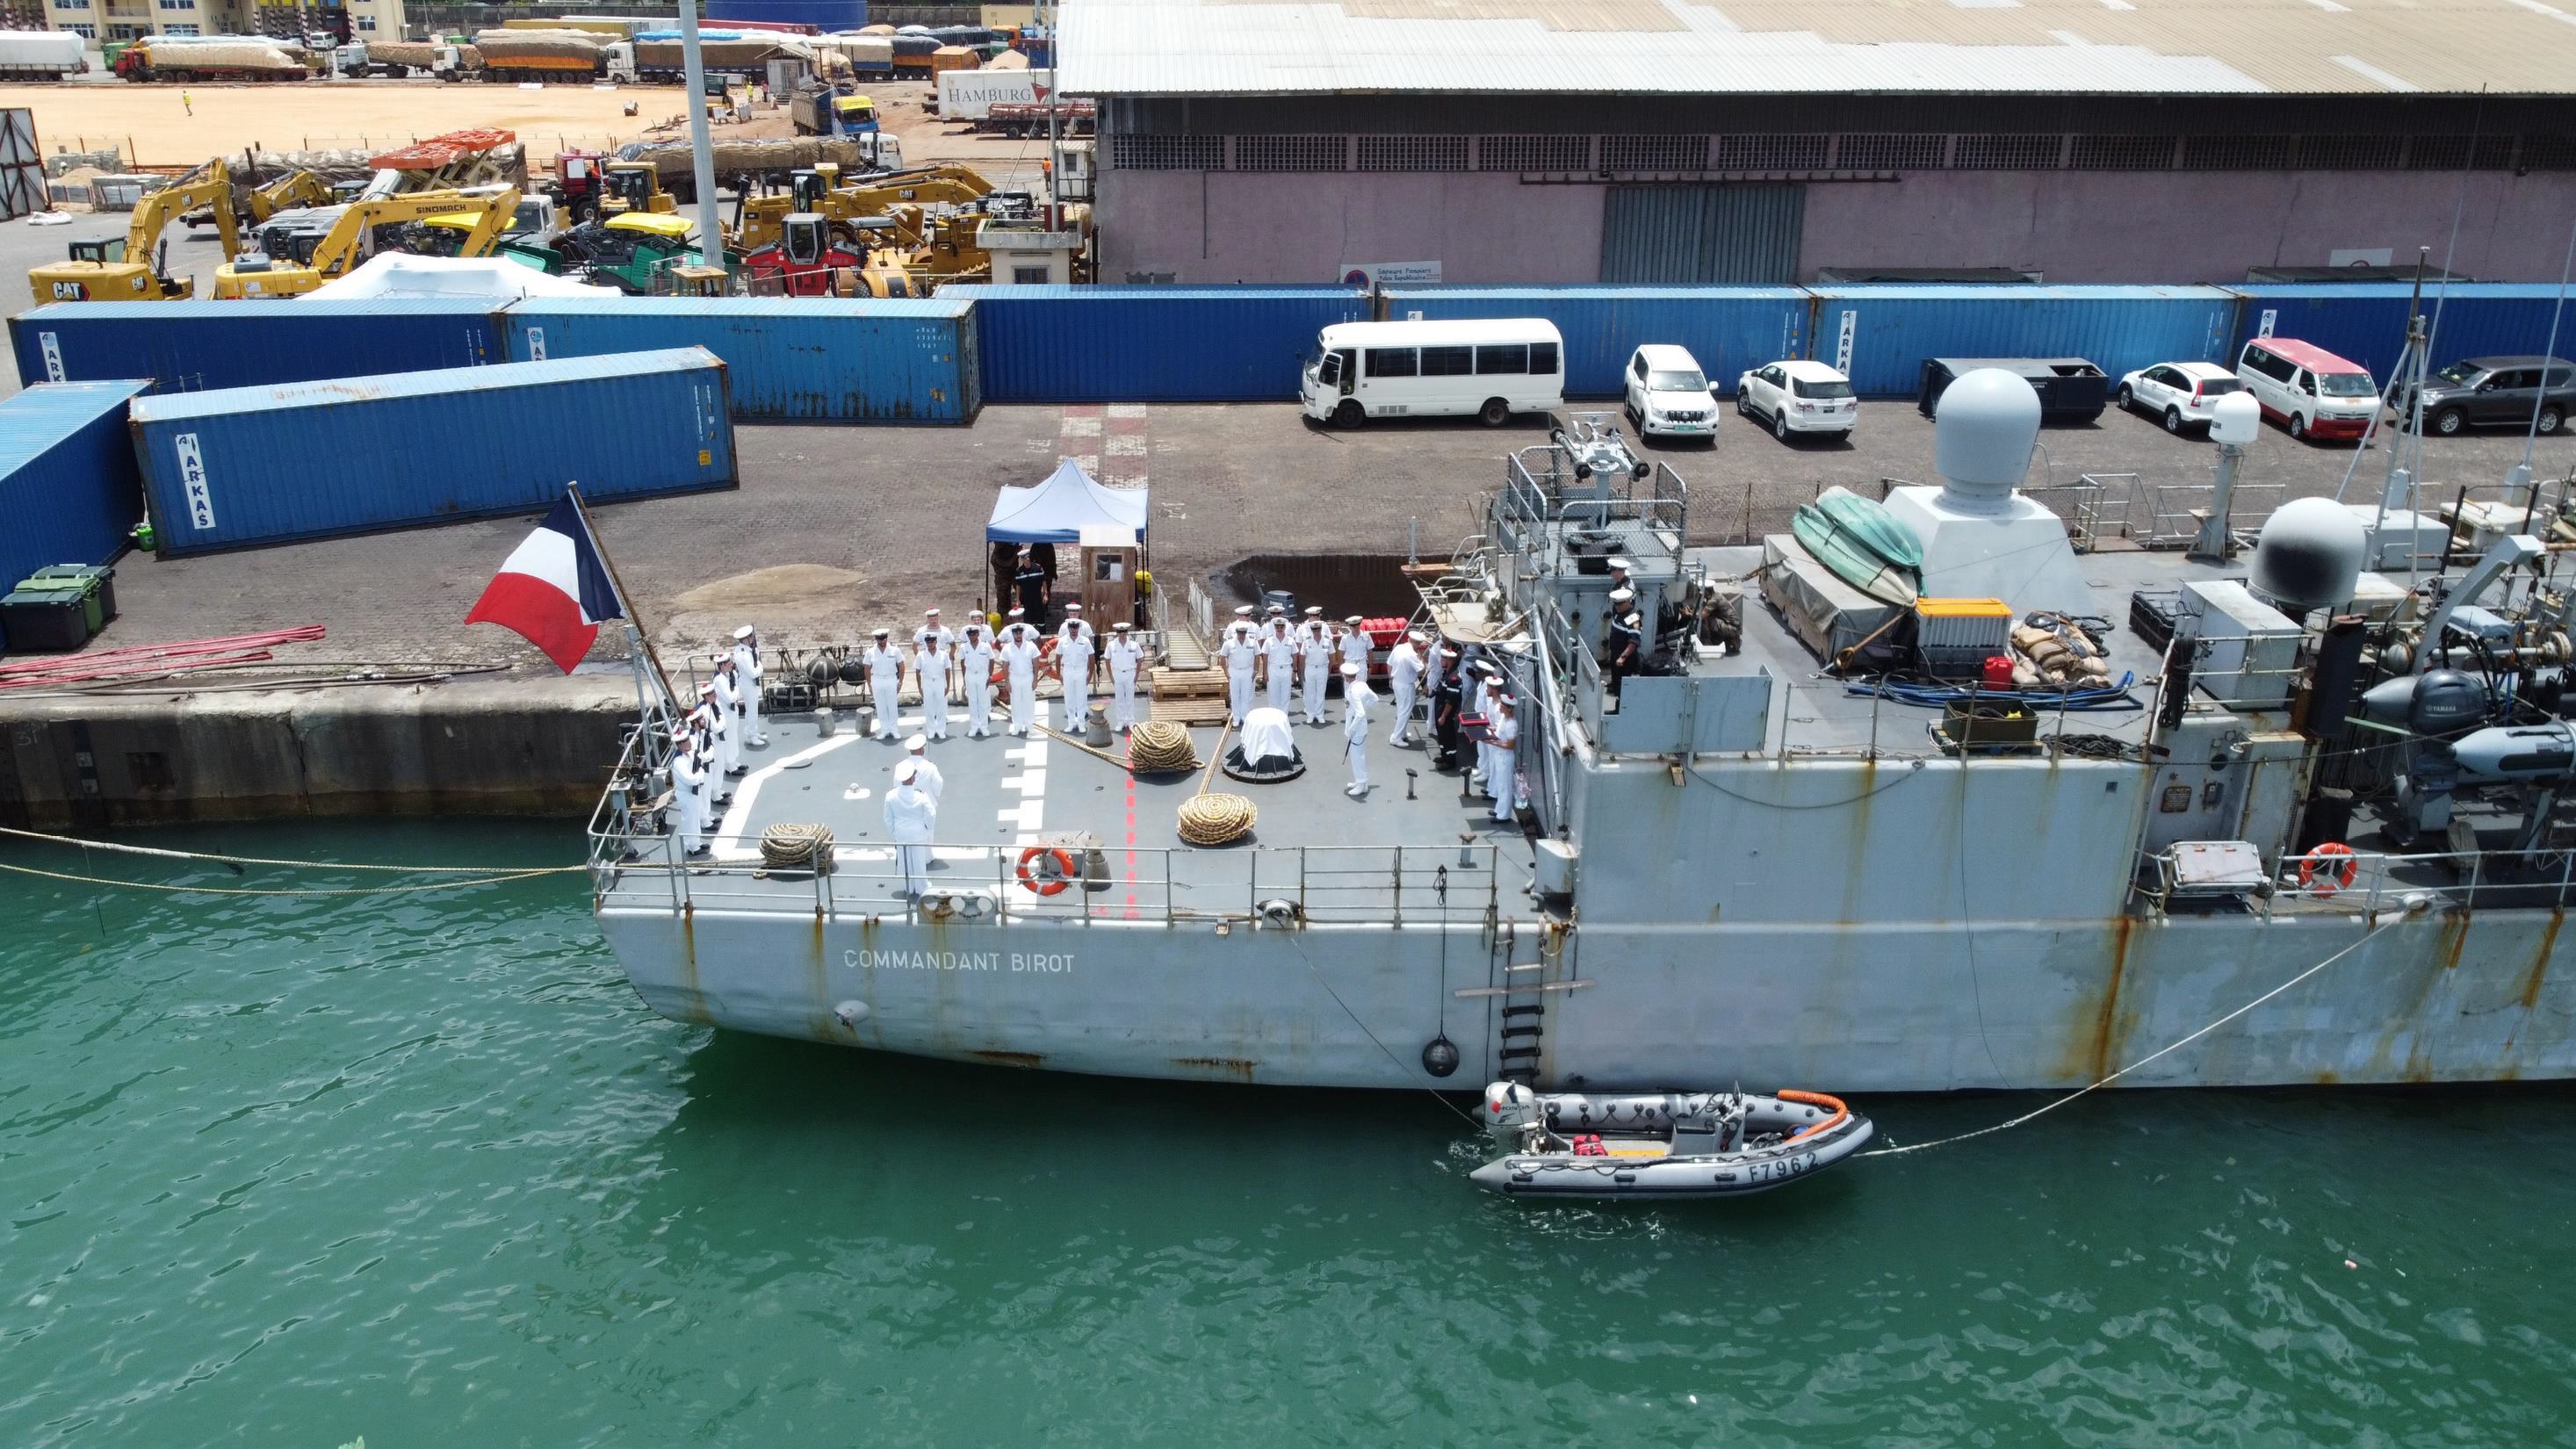 Le patrouilleur Cdt Birot accosté dans le port de Cotonou